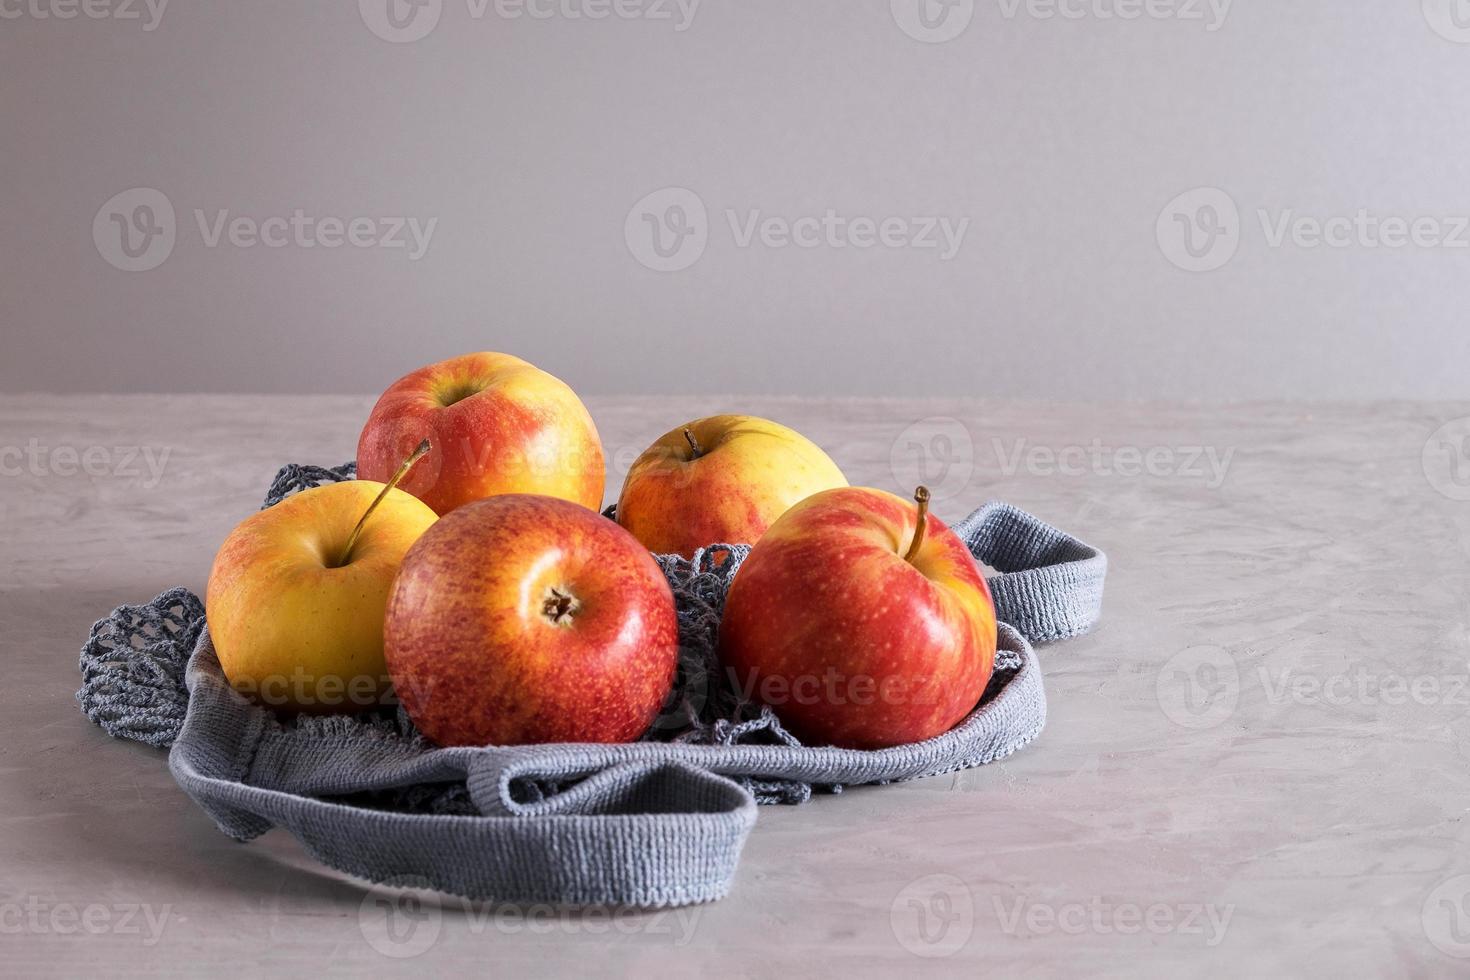 belles pommes fraîches et mûres dans un sac en filet écologique photo